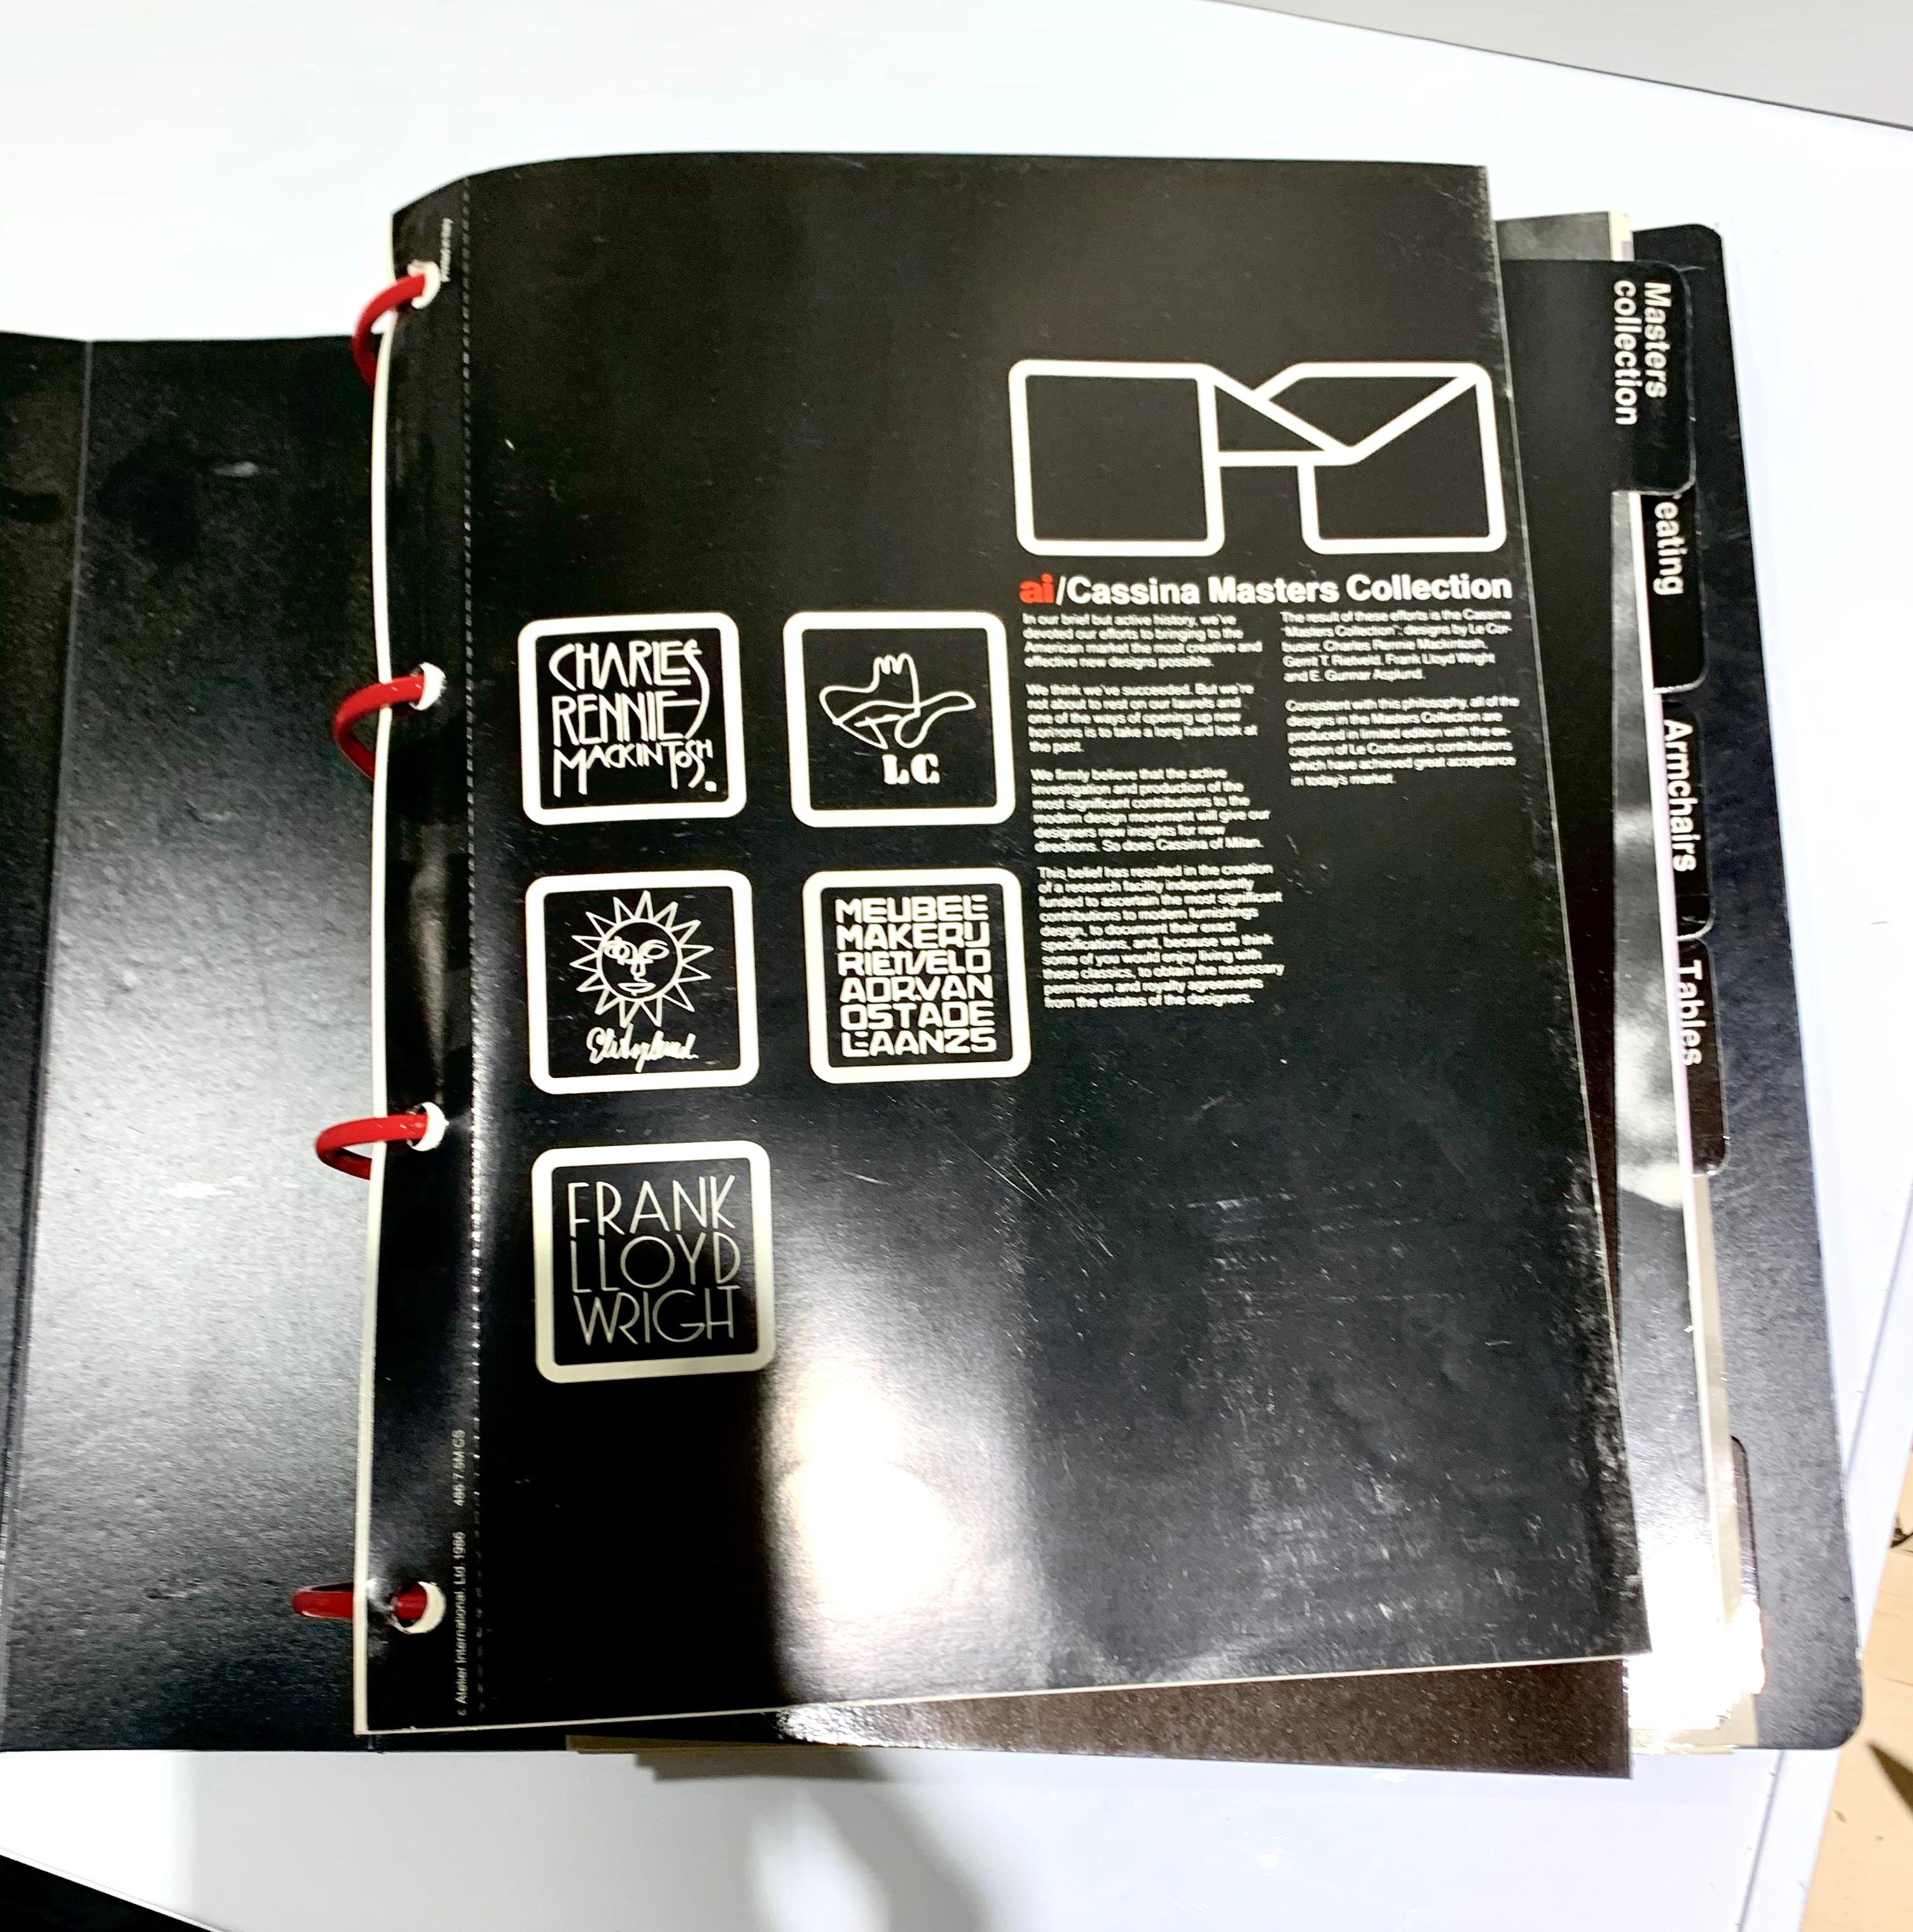 Atelier International Limited & Cassina Trade catalogue Binder, 1988. Seltene Anthologie von Cassina / AI-Angeboten, einschließlich der Master's Collection'S Mitte bis Ende der 1980er Jahre - eine Reihe von Frank Lloyd Wright-Raritäten / limitierten